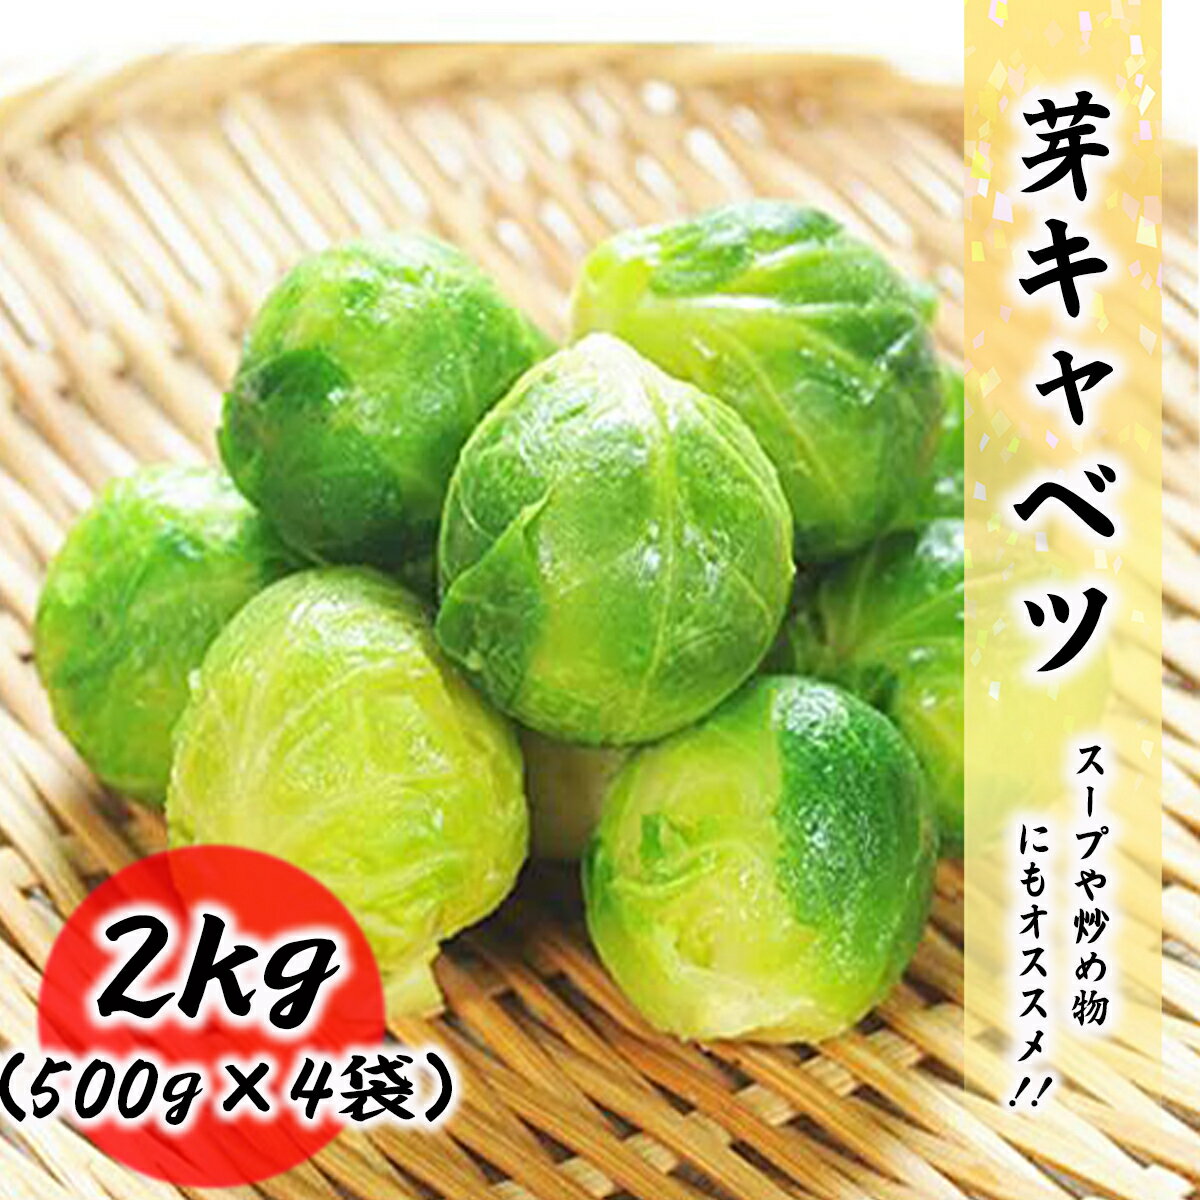 芽キャベツ 冷凍 野菜 2kg 500g 4袋 料理店でも使われる業務用 キャベツ